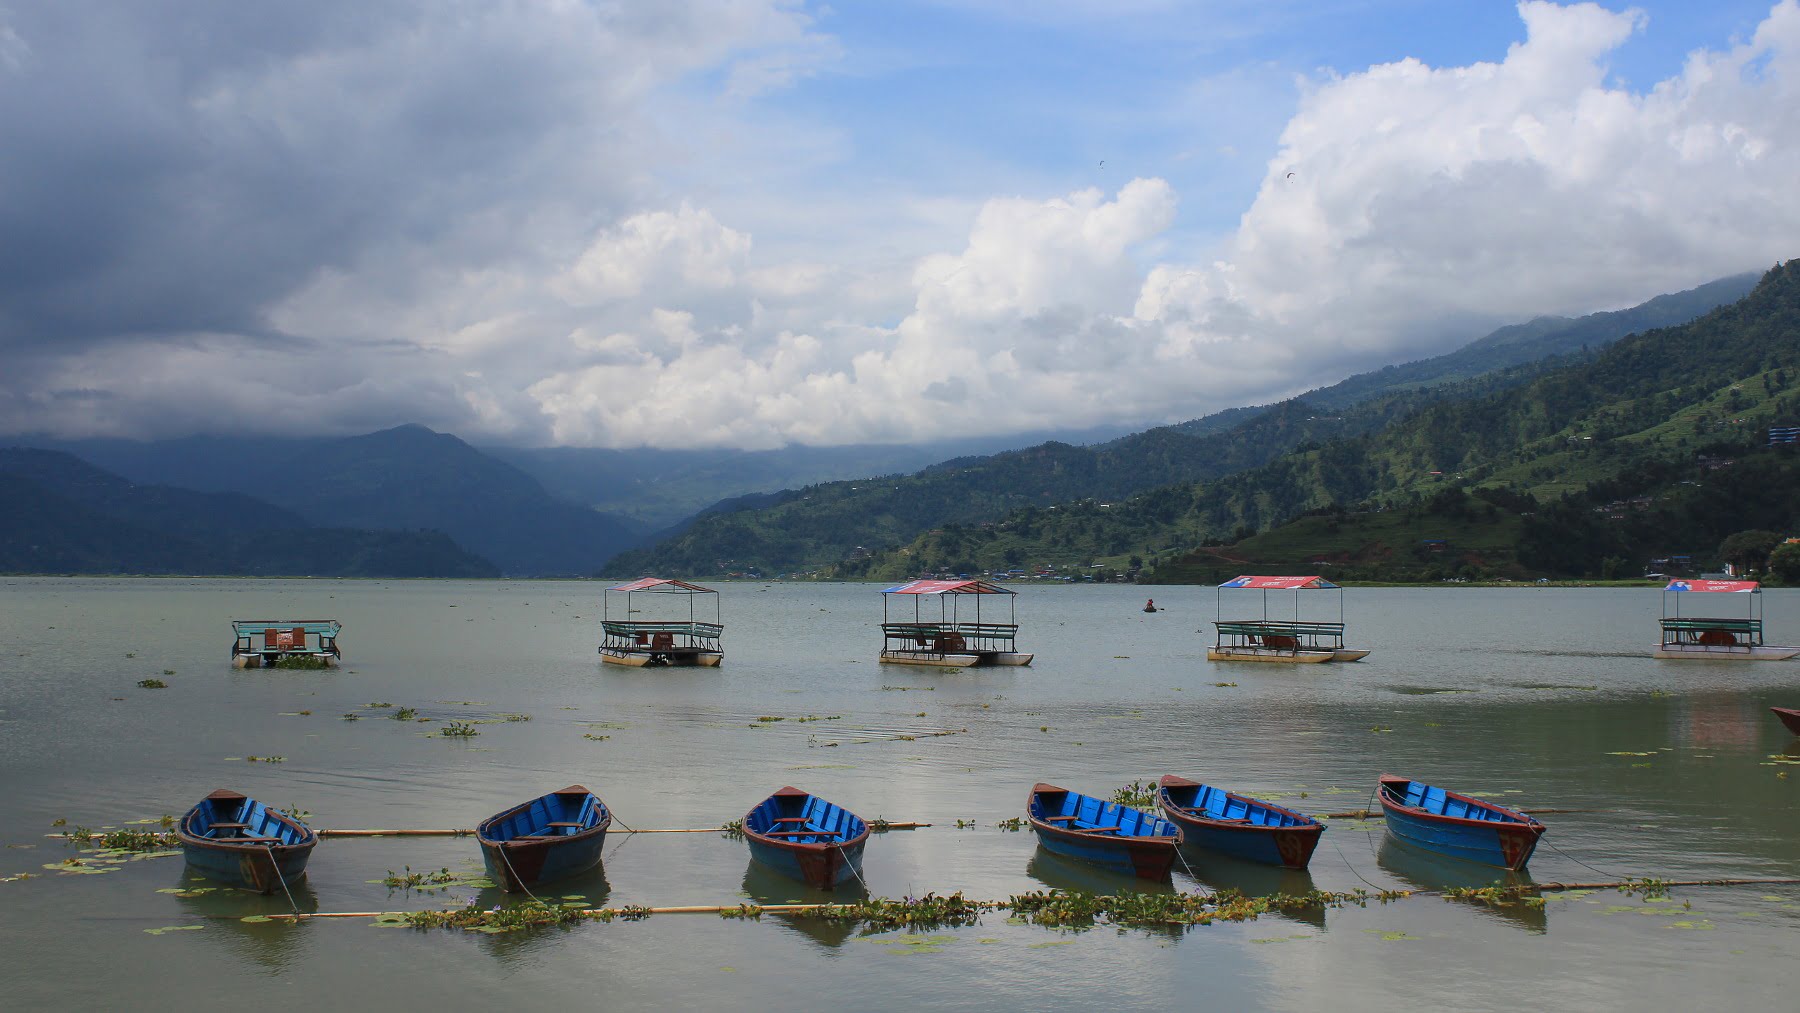 Boats on the Phewa Lake, Pokhara.